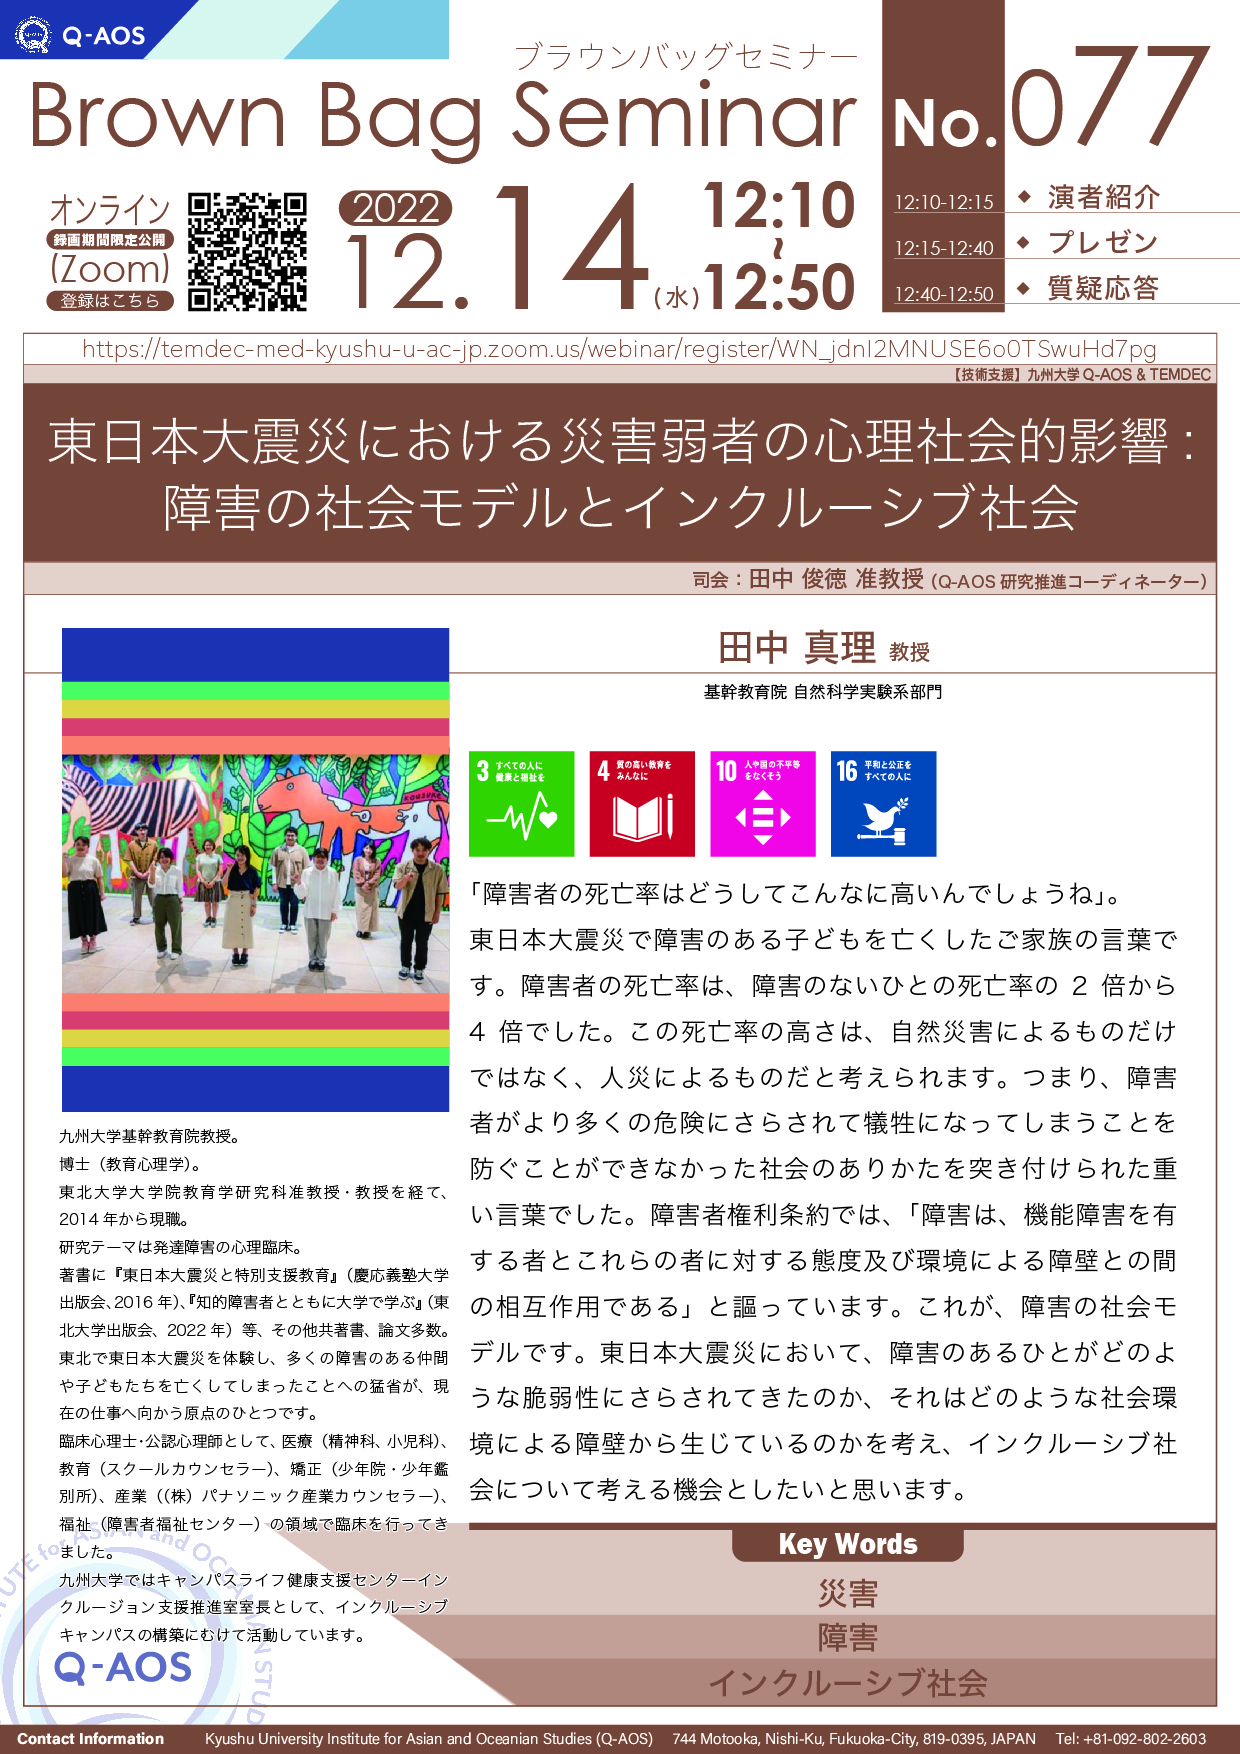 アイキャッチ画像：第77回Q-AOSブラウンバッグセミナー「東日本大震災における災害弱者の心理社会的影響: 障害の社会モデルとインクルーシブ社会」